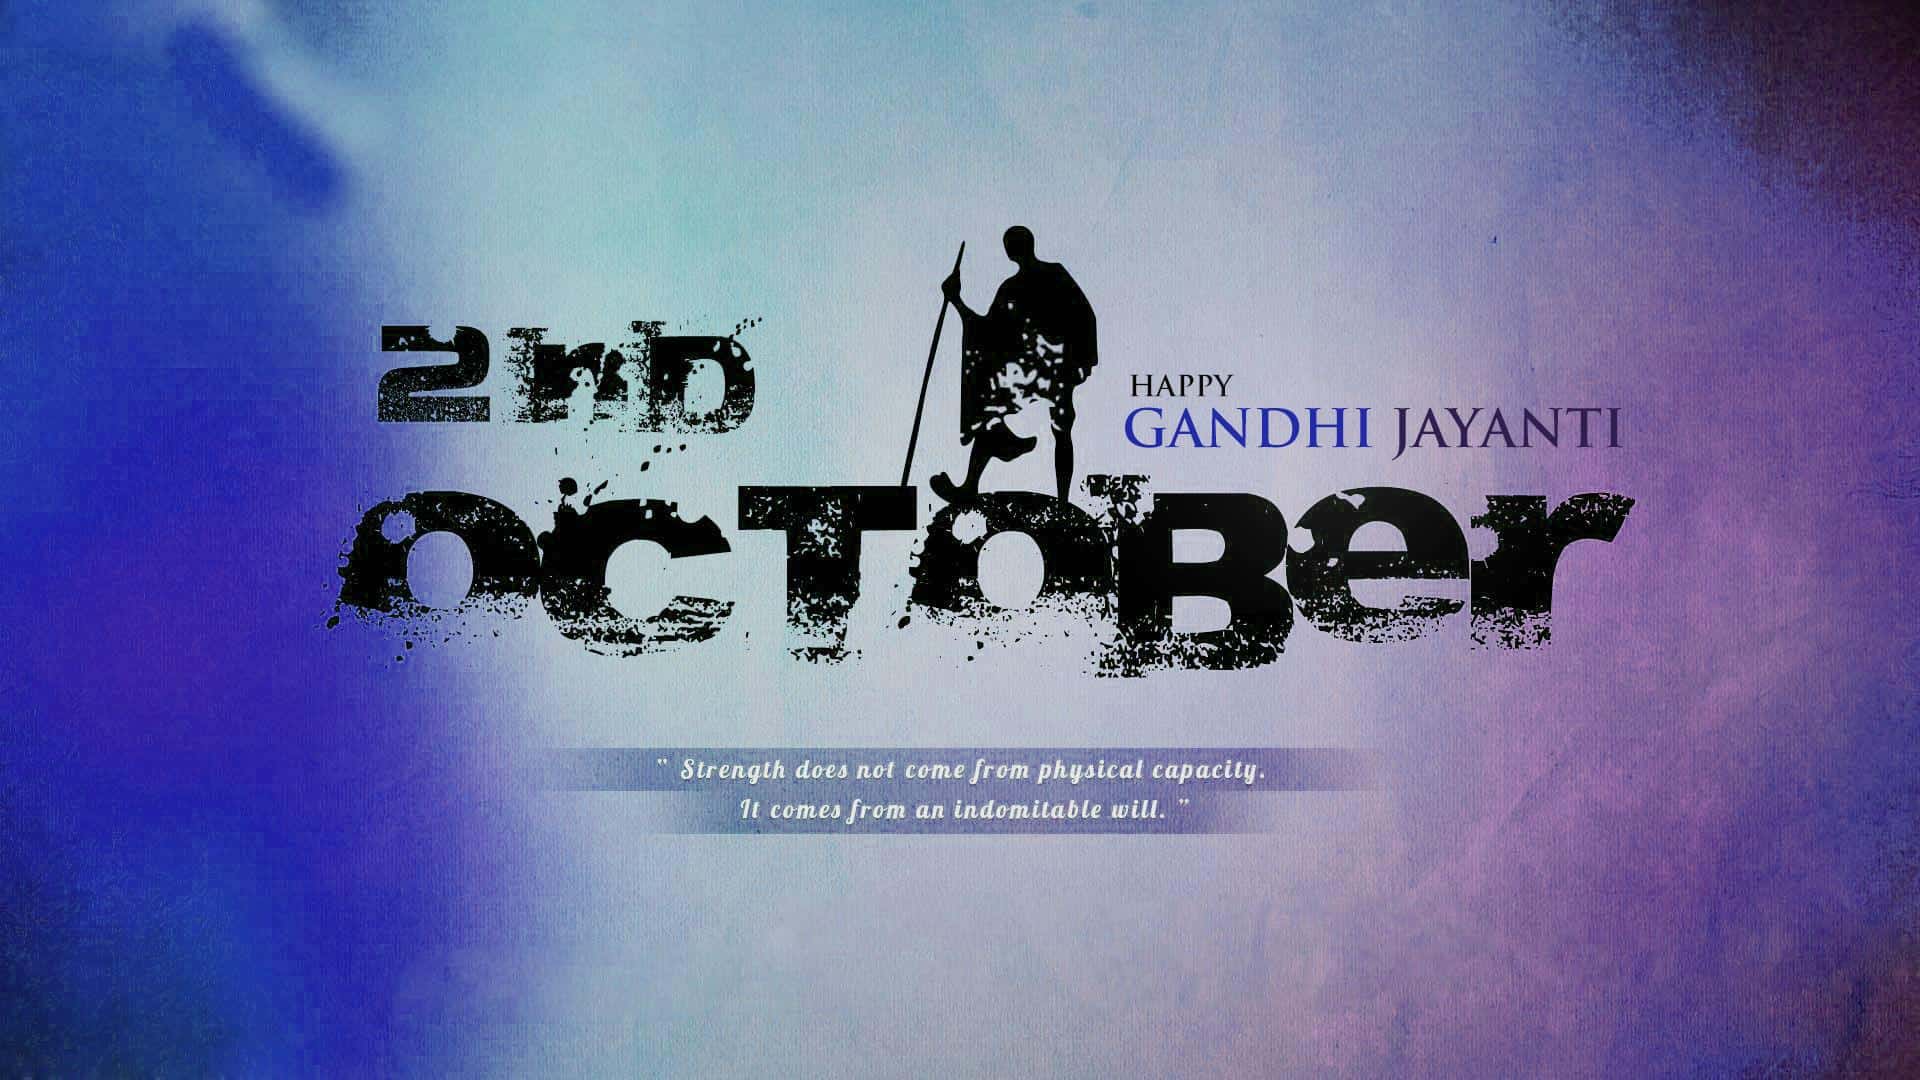 Gandhi Jayanti Images